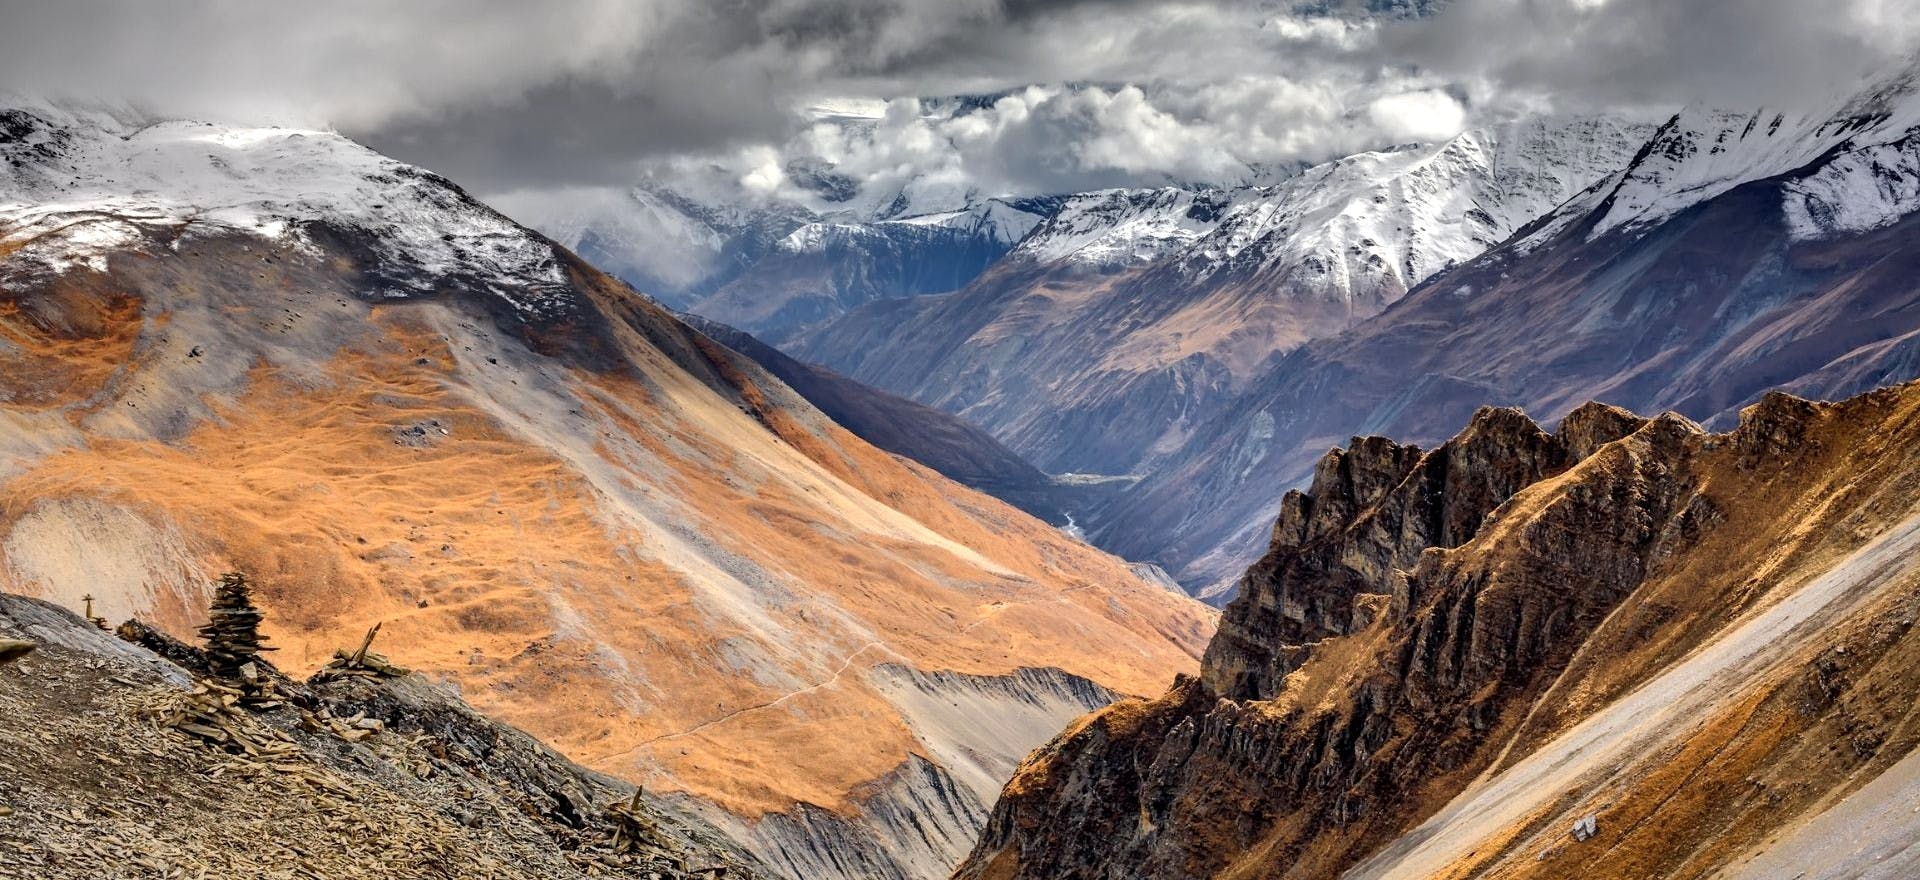 5 Longest Treks in Nepal